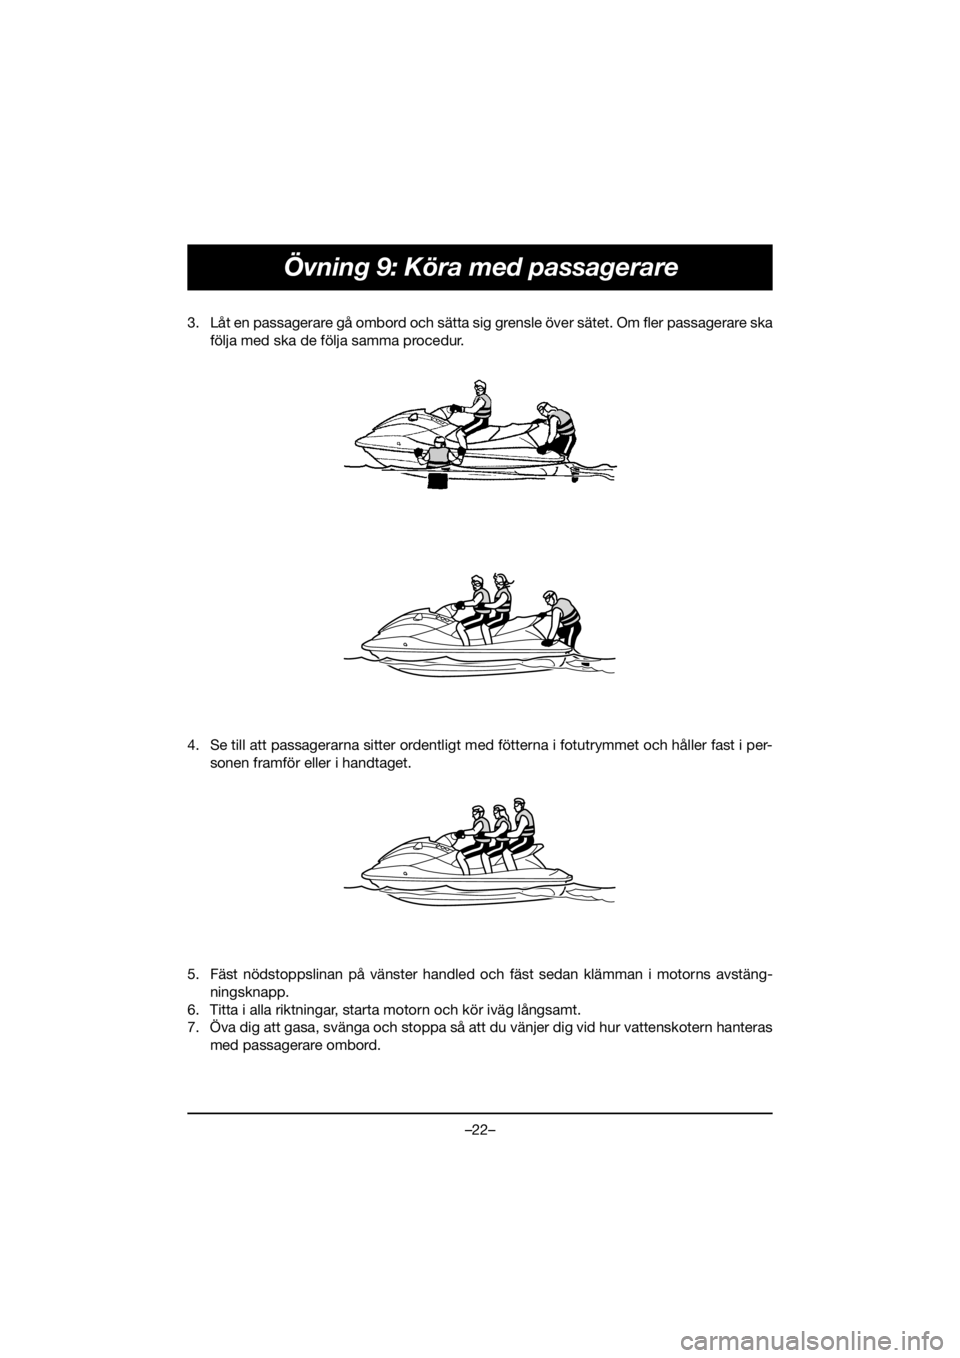 YAMAHA EX 2020  Manual de utilização (in Portuguese) –22–
Övning 9: Köra med passagerare
3. Låt en passagerare gå ombord och sätta sig grensle över sätet. Om fler passagerare ska
följa med ska de följa samma procedur. 
4. Se till att passag